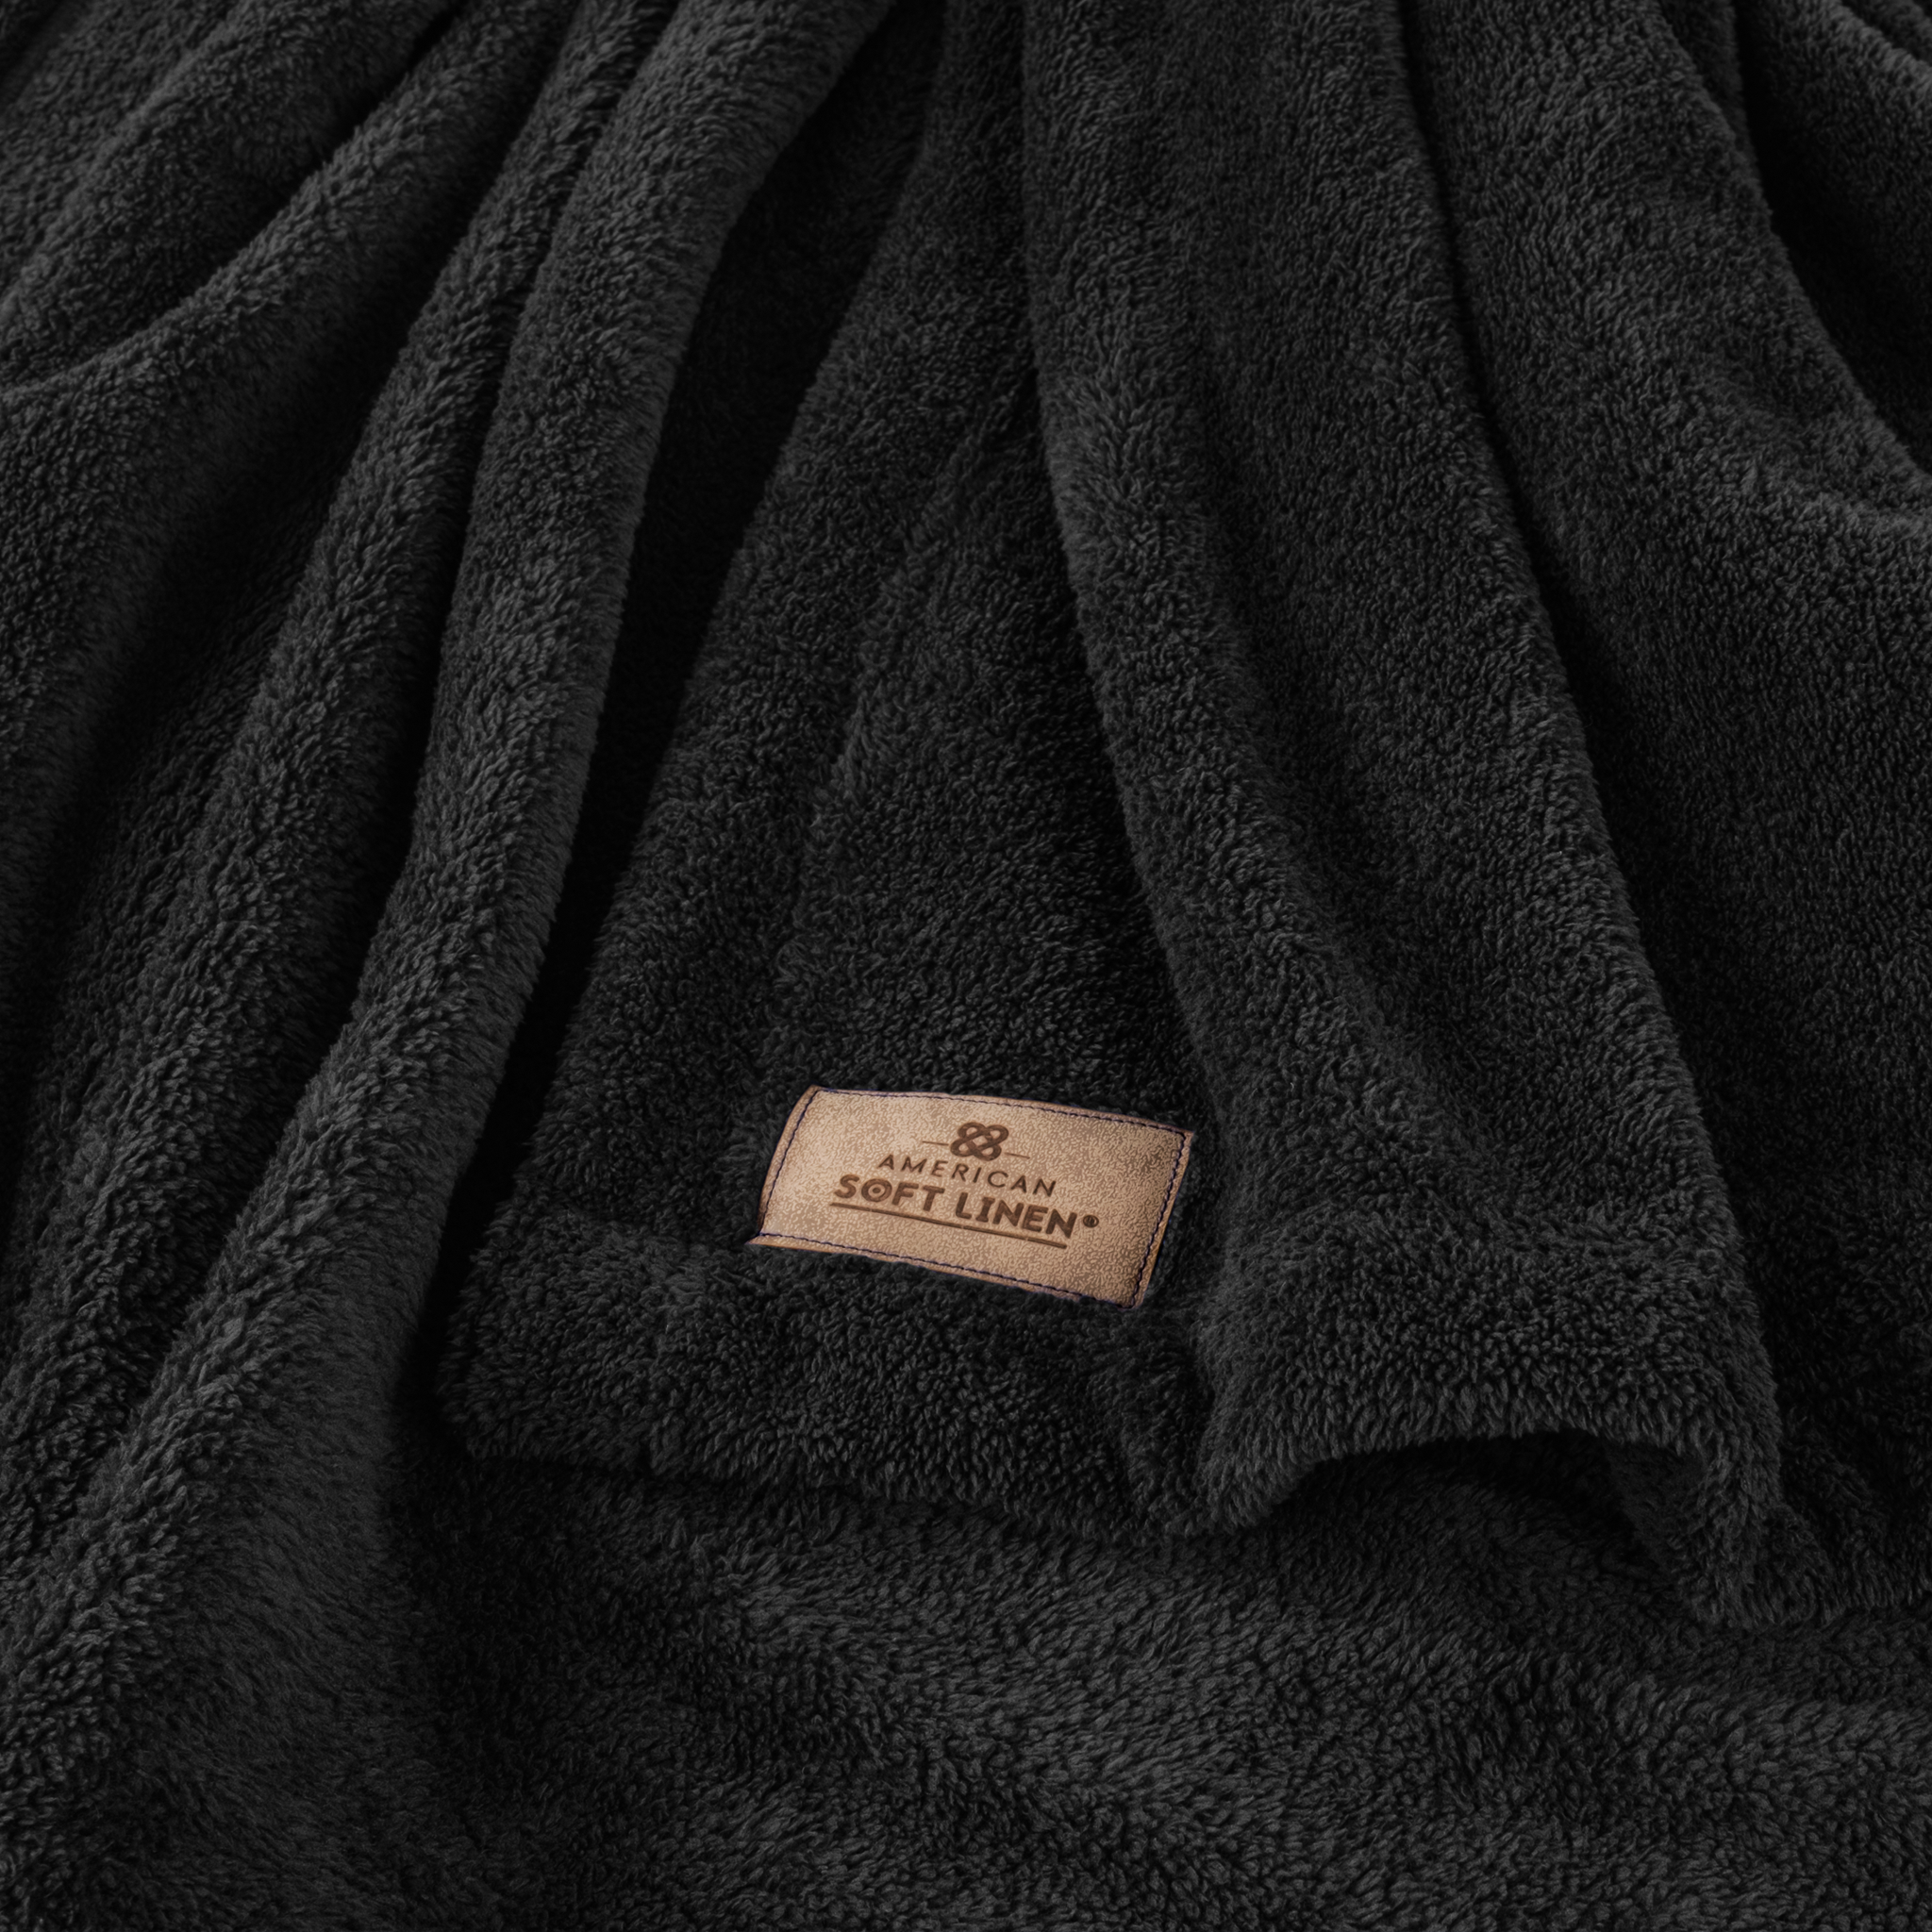 American Soft Linen - Bedding Fleece Blanket - Queen Size 85x90 inches - Black - 4